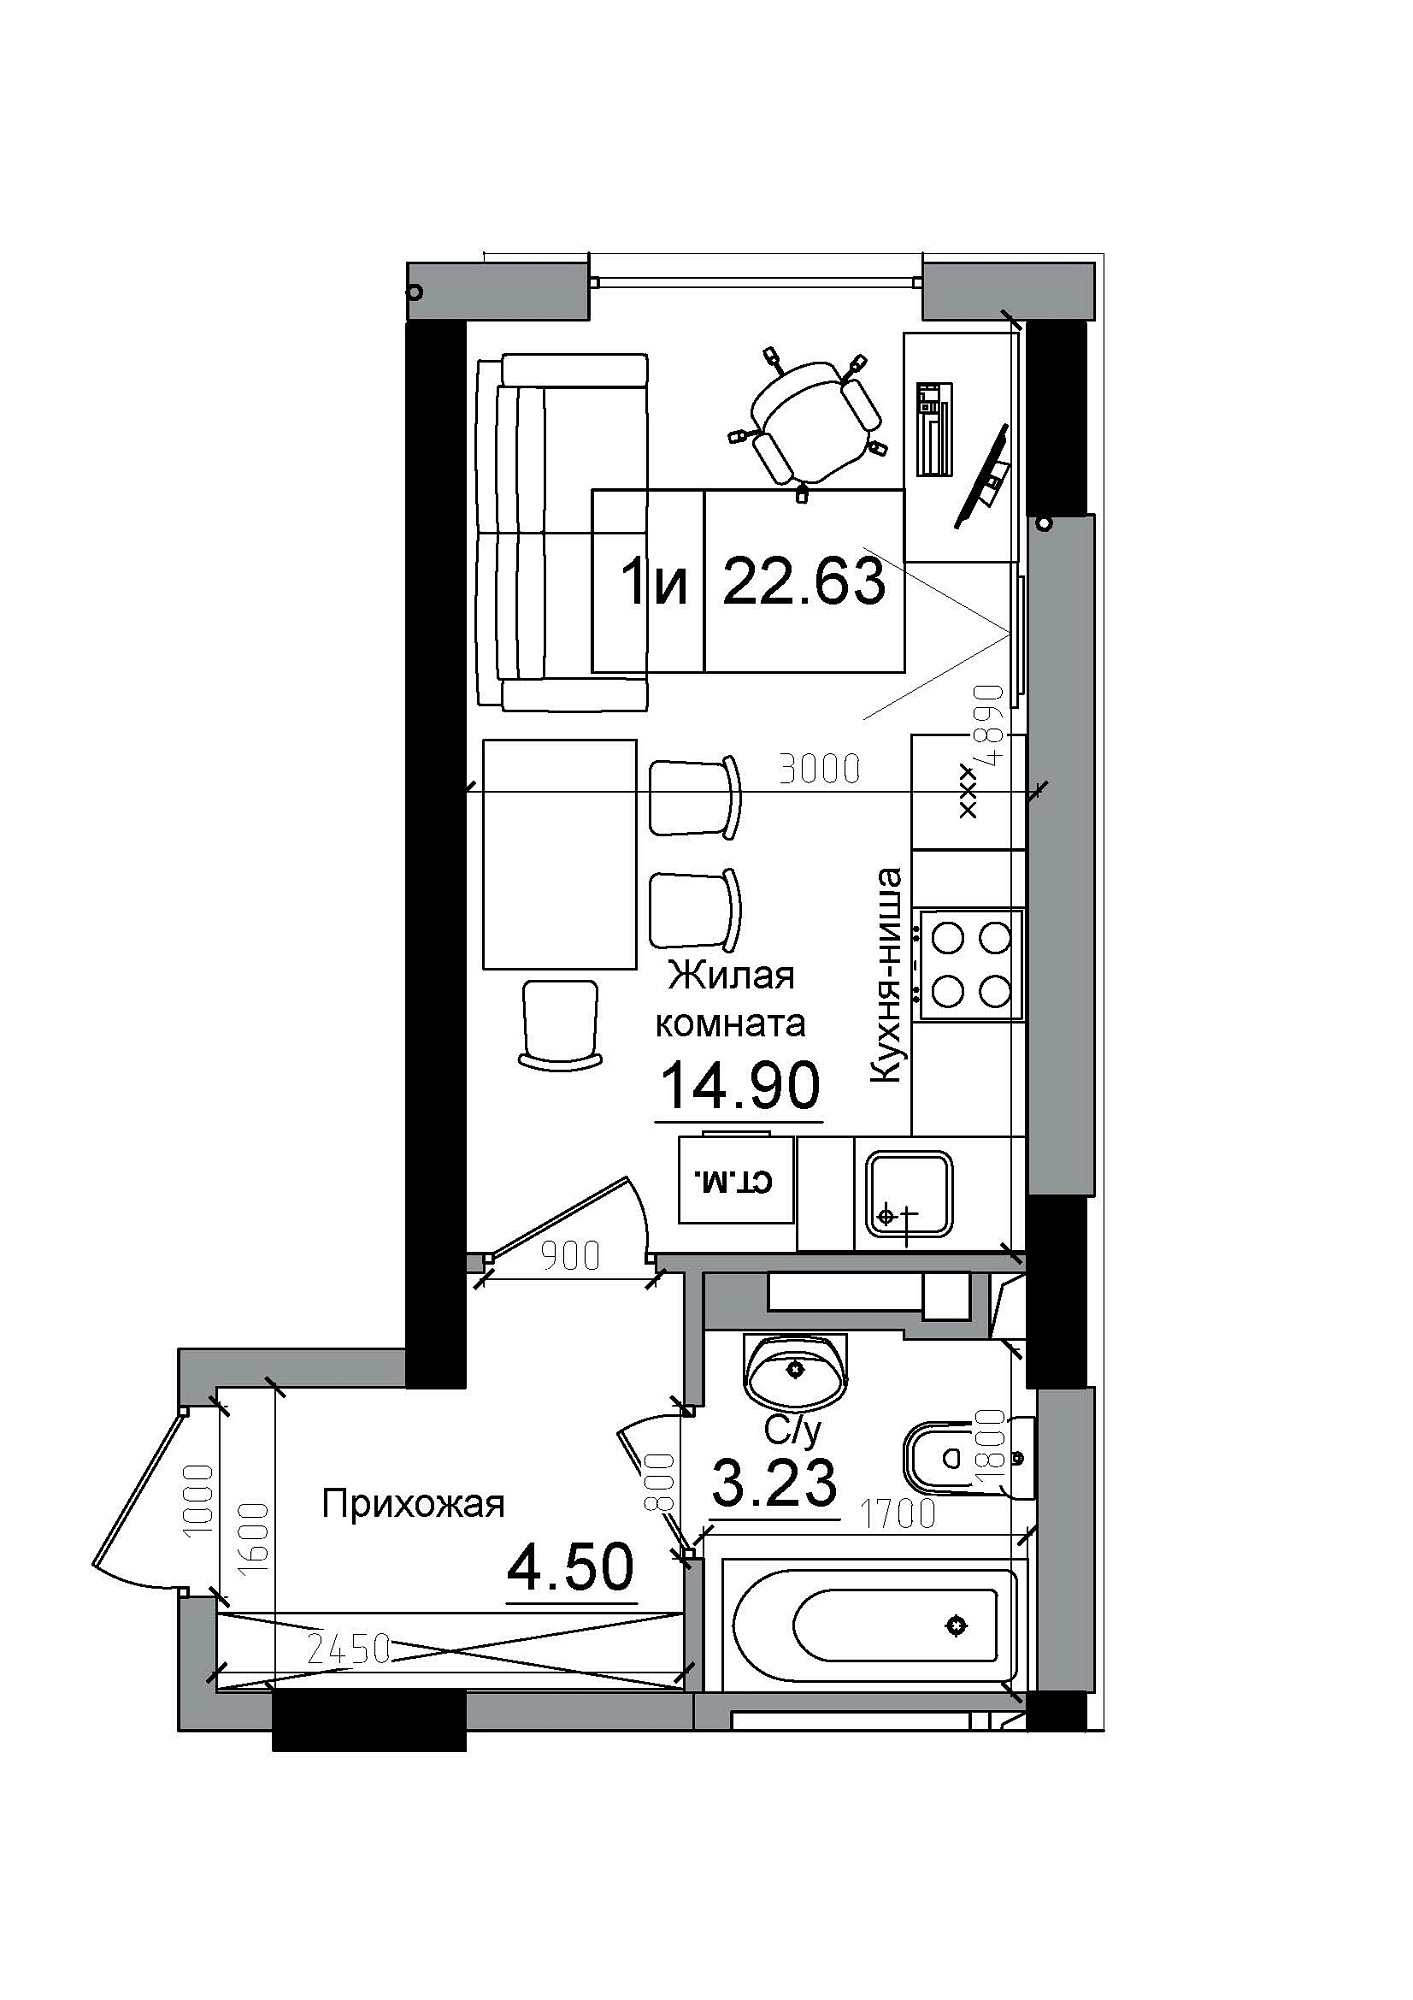 Планування Smart-квартира площею 22.63м2, AB-12-07/00011.